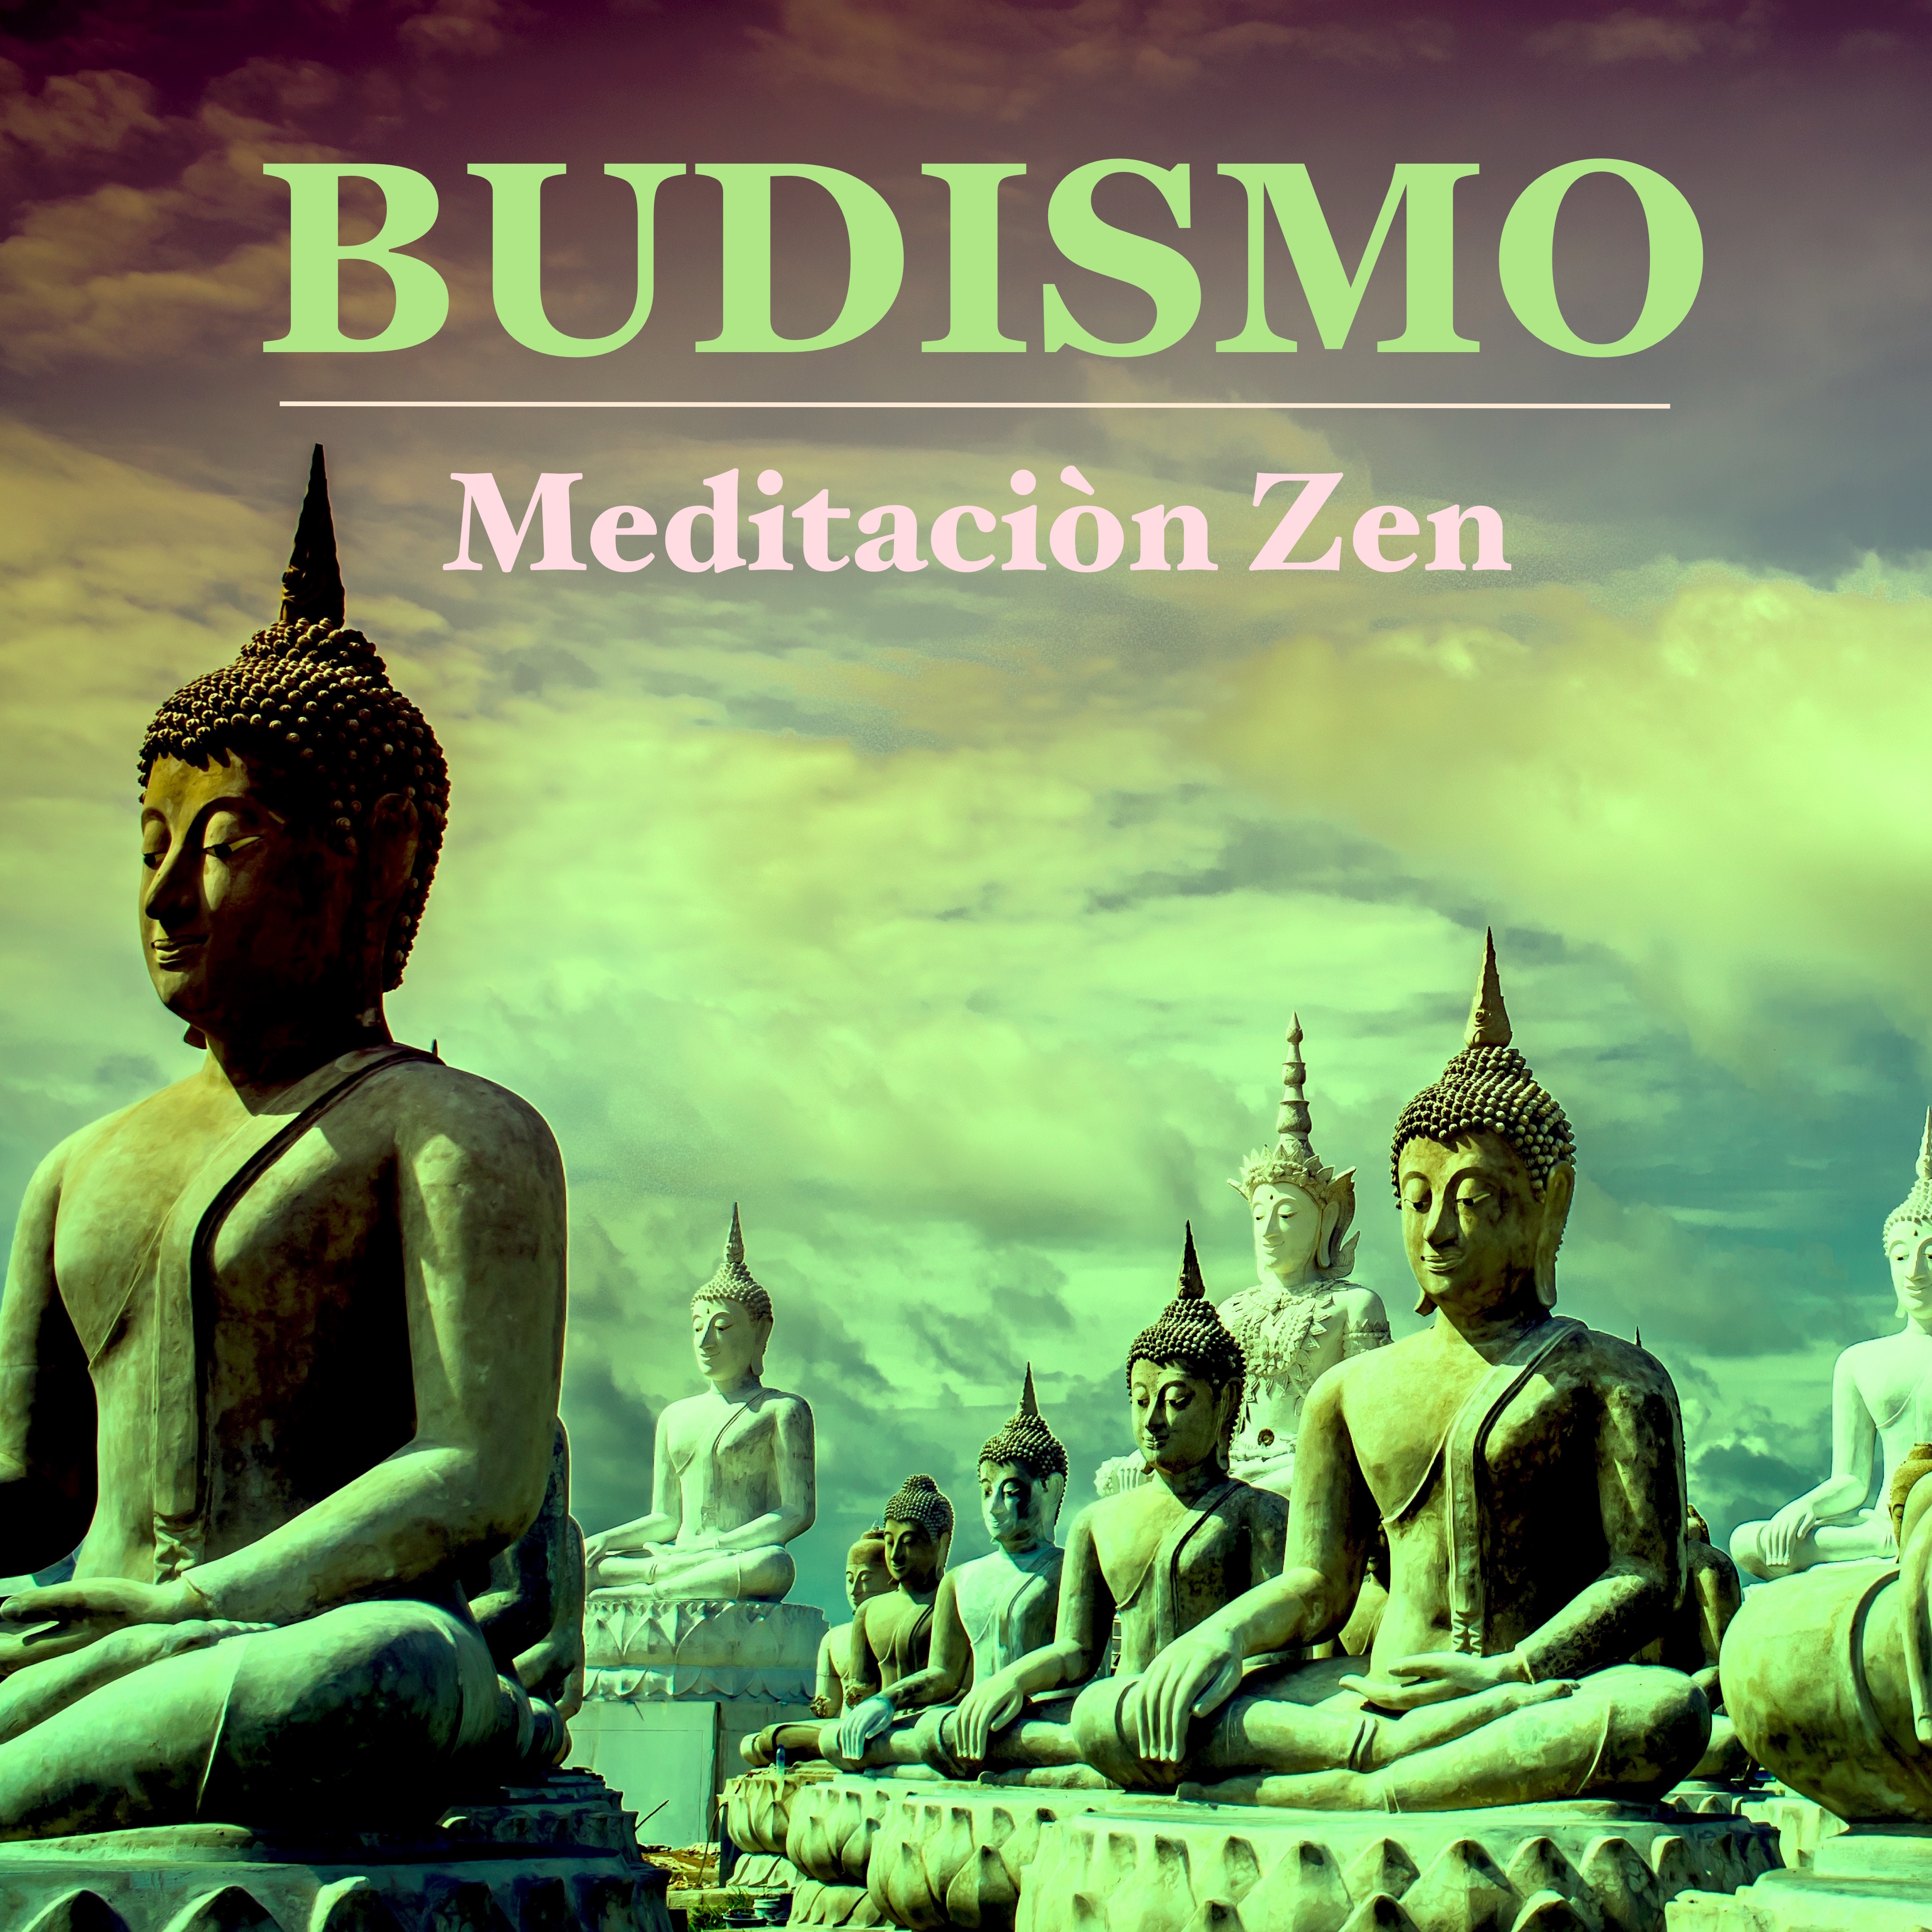 Budismo  Mu sica Budista para Meditacio n Zen Trascendental  Sanar el Alma y Relajar la Mente